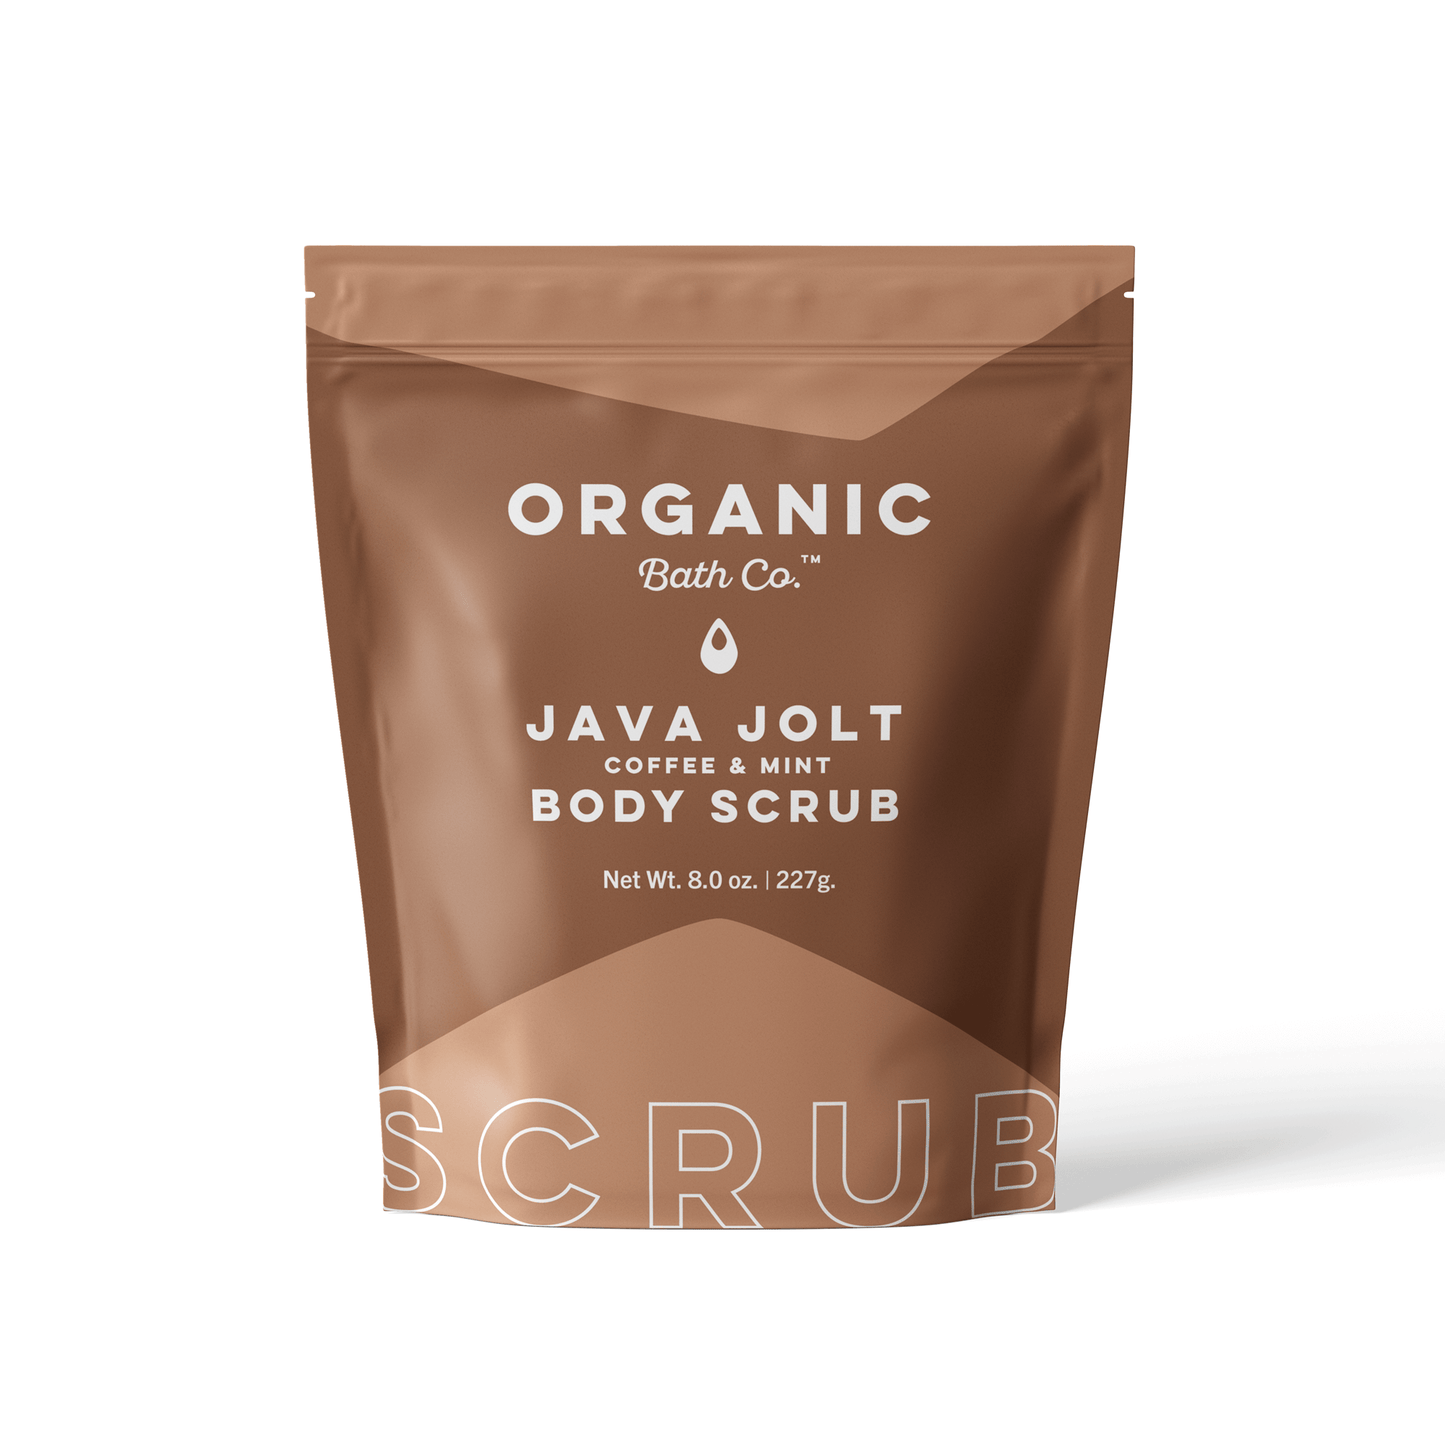 Organic Bath Co. Java Jolt Body Scrub